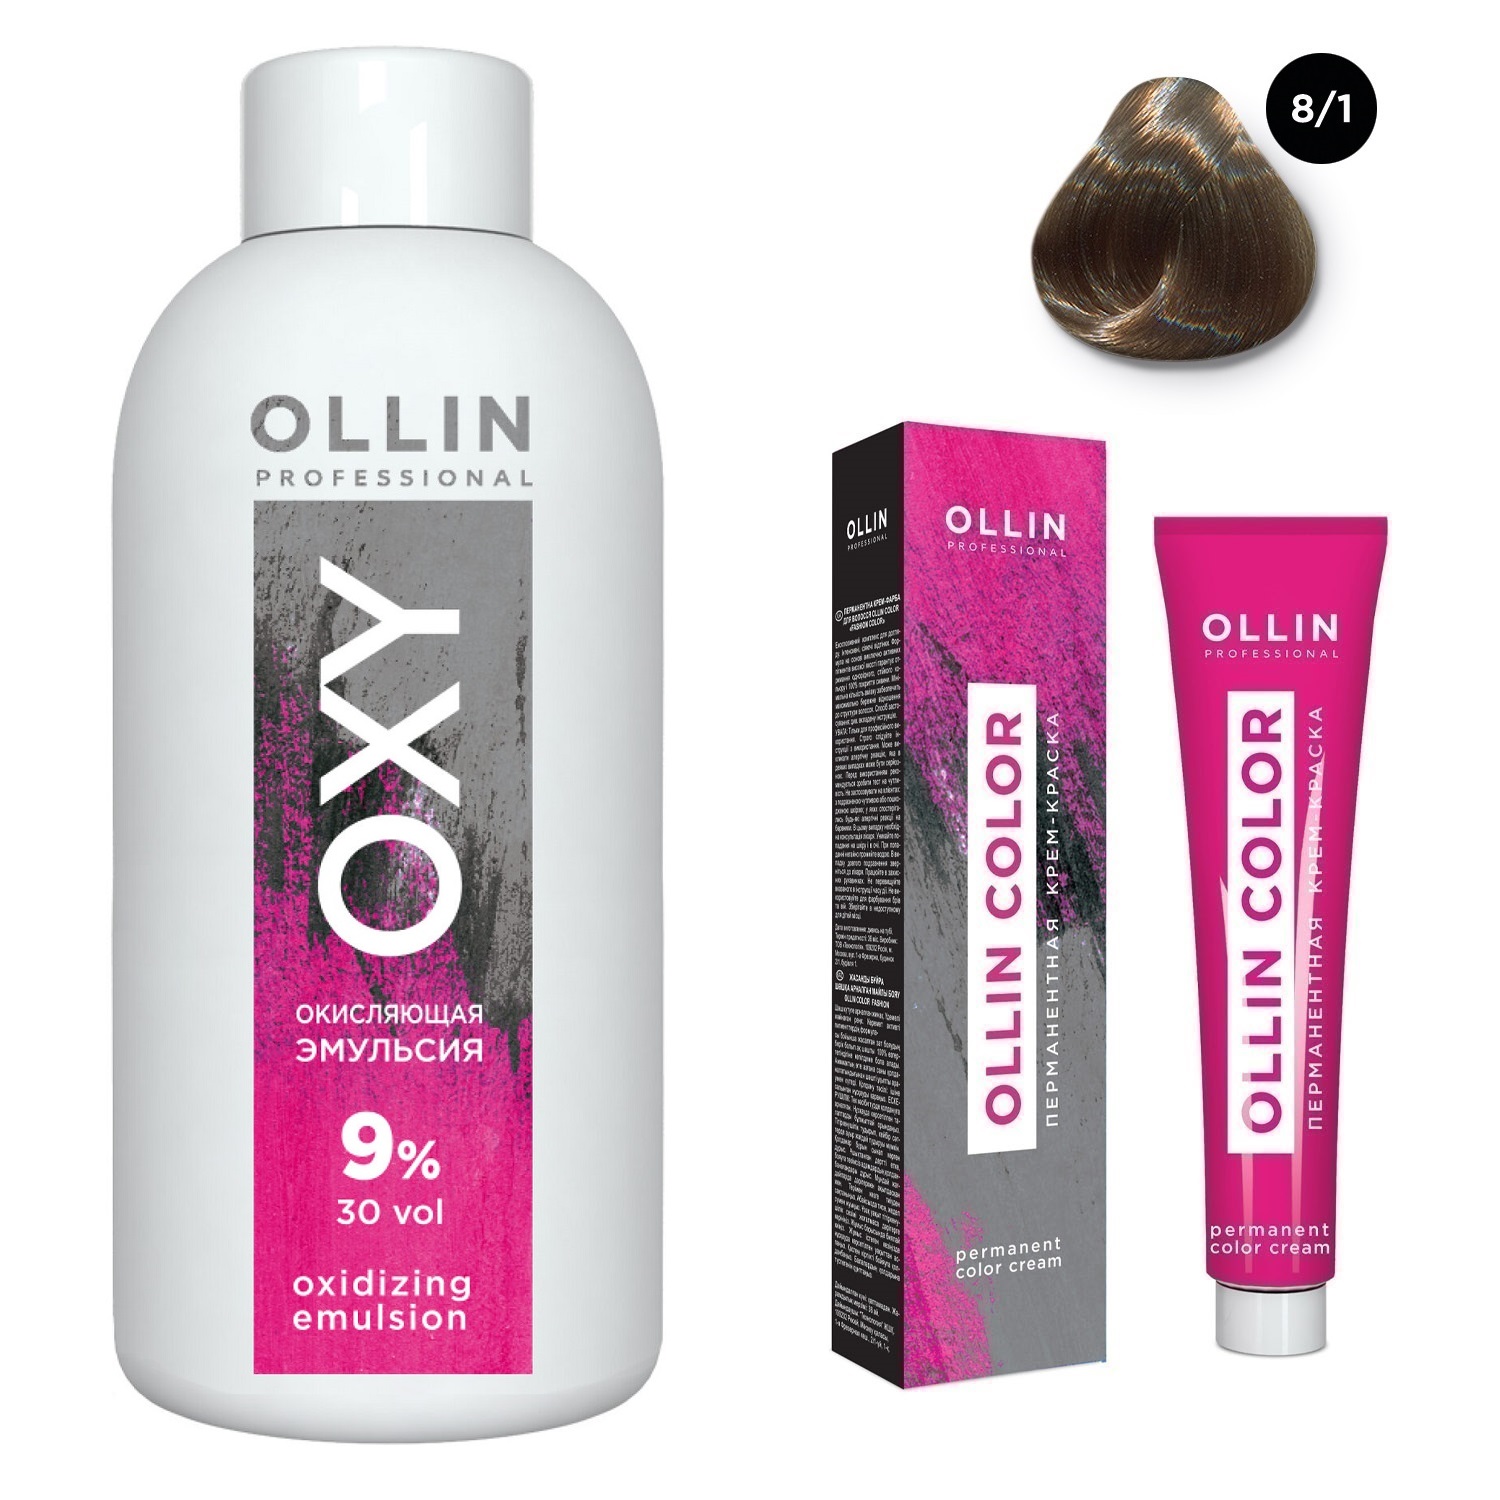 Ollin Professional Набор Перманентная крем-краска для волос Ollin Color оттенок 8/1 светло-русый пепельный 100 мл + Окисляющая эмульсия Oxy 9% 150 мл (Ollin Professional, Ollin Color)